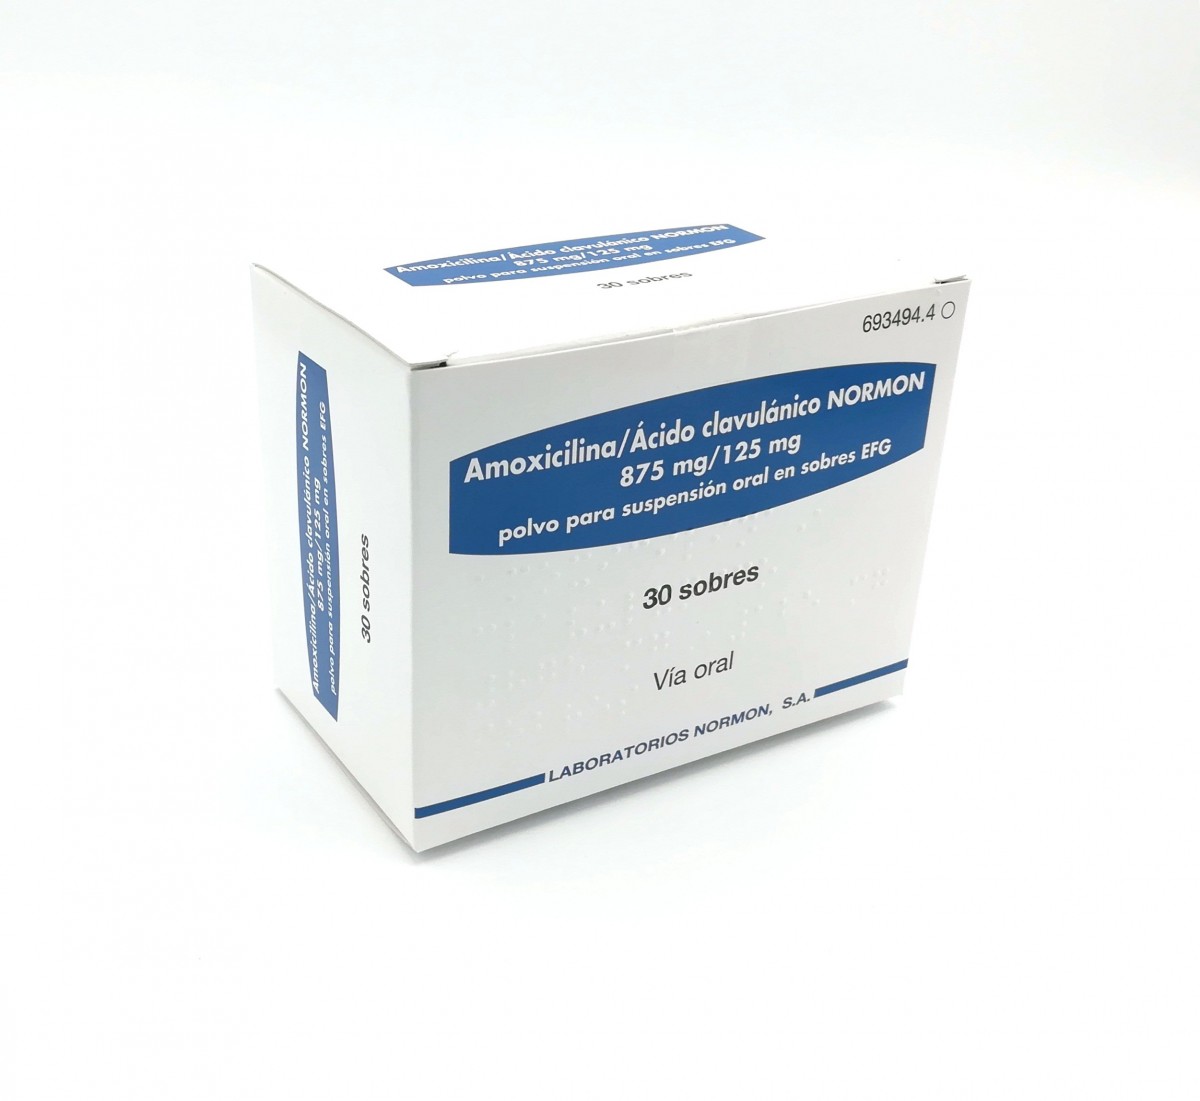 AMOXICILINA/ACIDO CLAVULANICO NORMON 875 mg/125 mg POLVO PARA SUSPENSION ORAL EN SOBRES EFG , 30 sobres fotografía del envase.